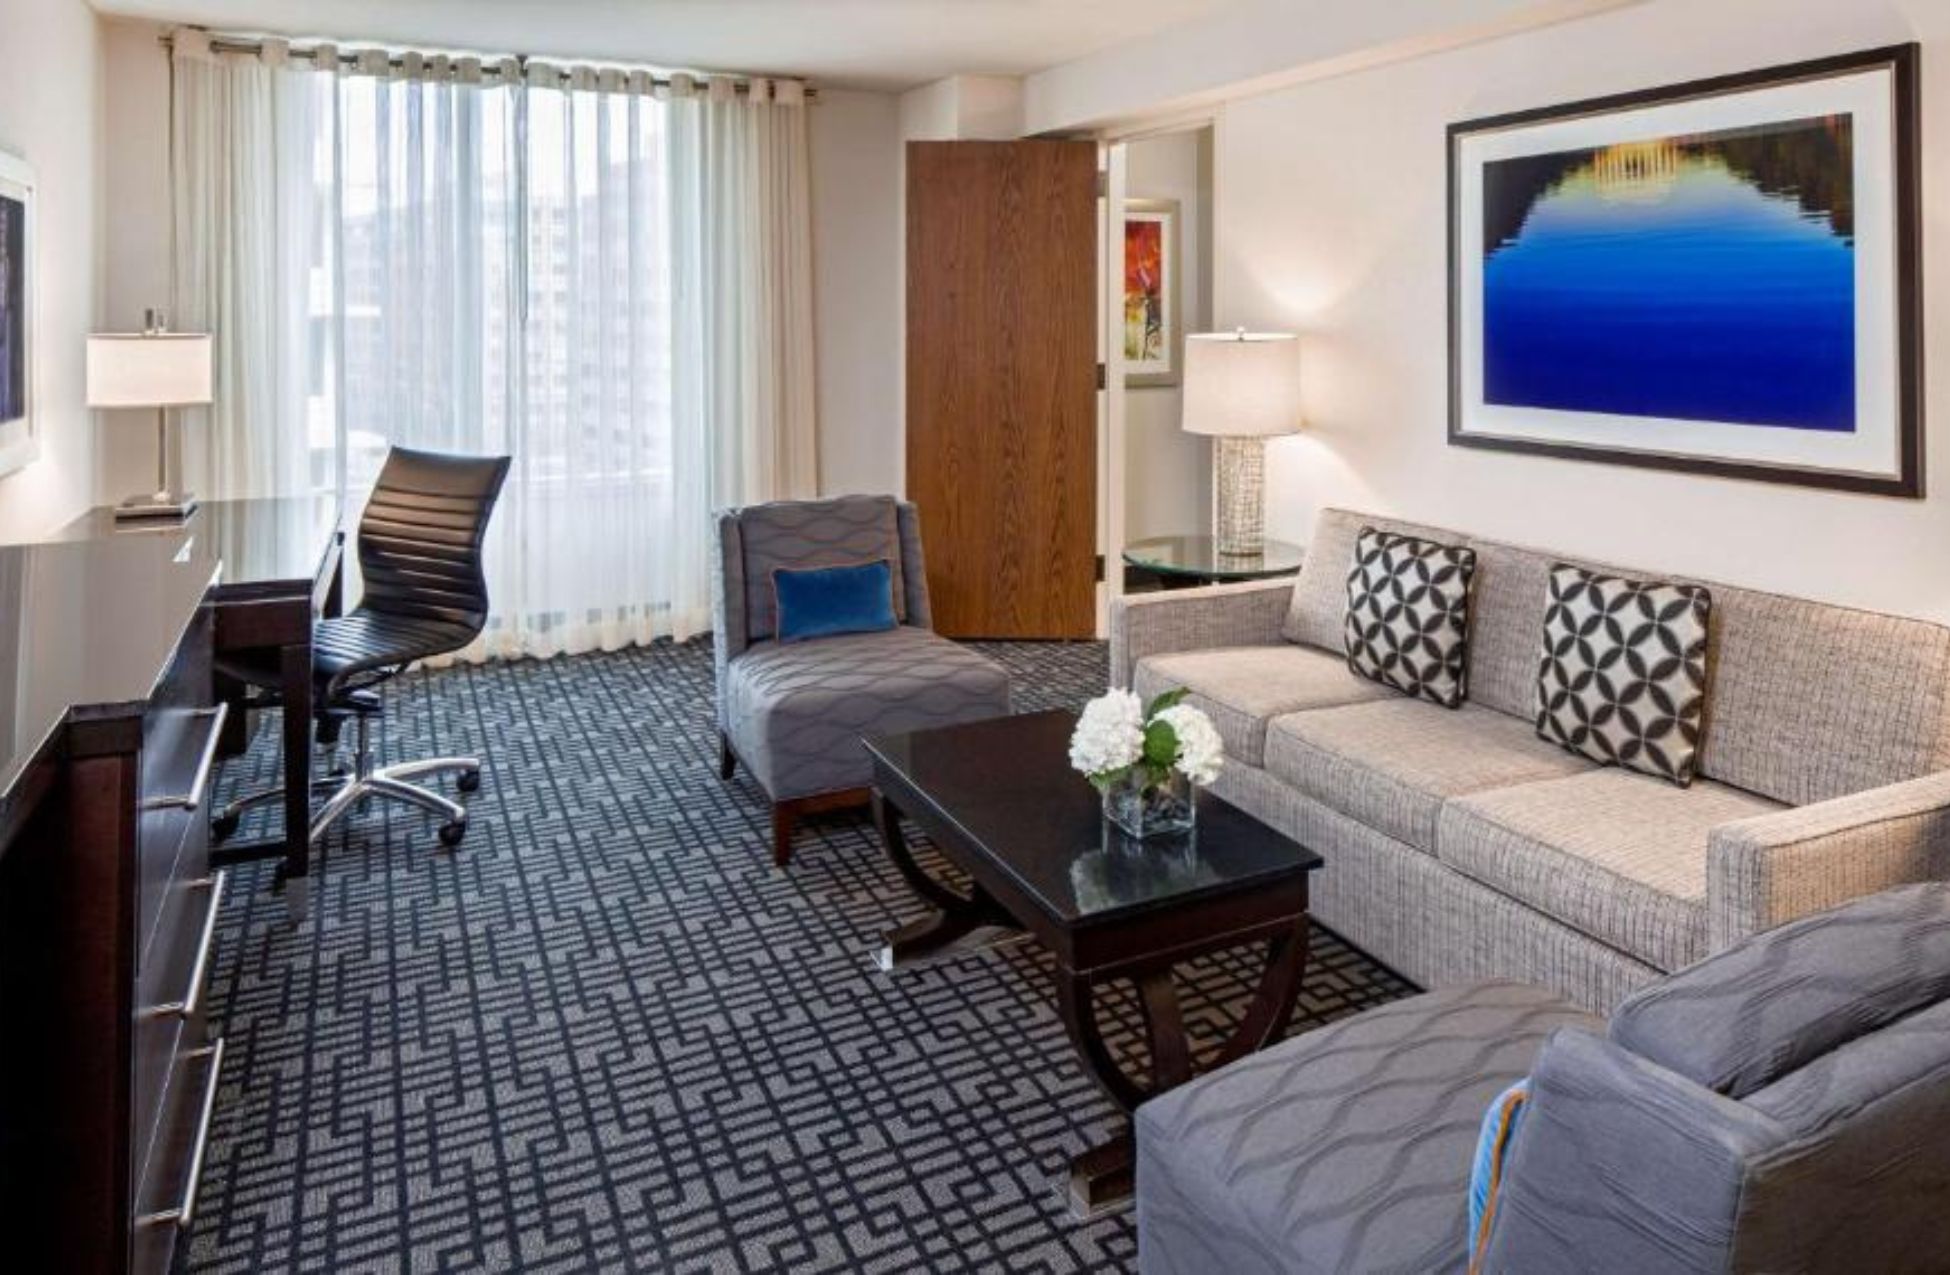 The Hyatt Regency Washington D.C. On Capitol Hill - Best Hotels In Washington DC